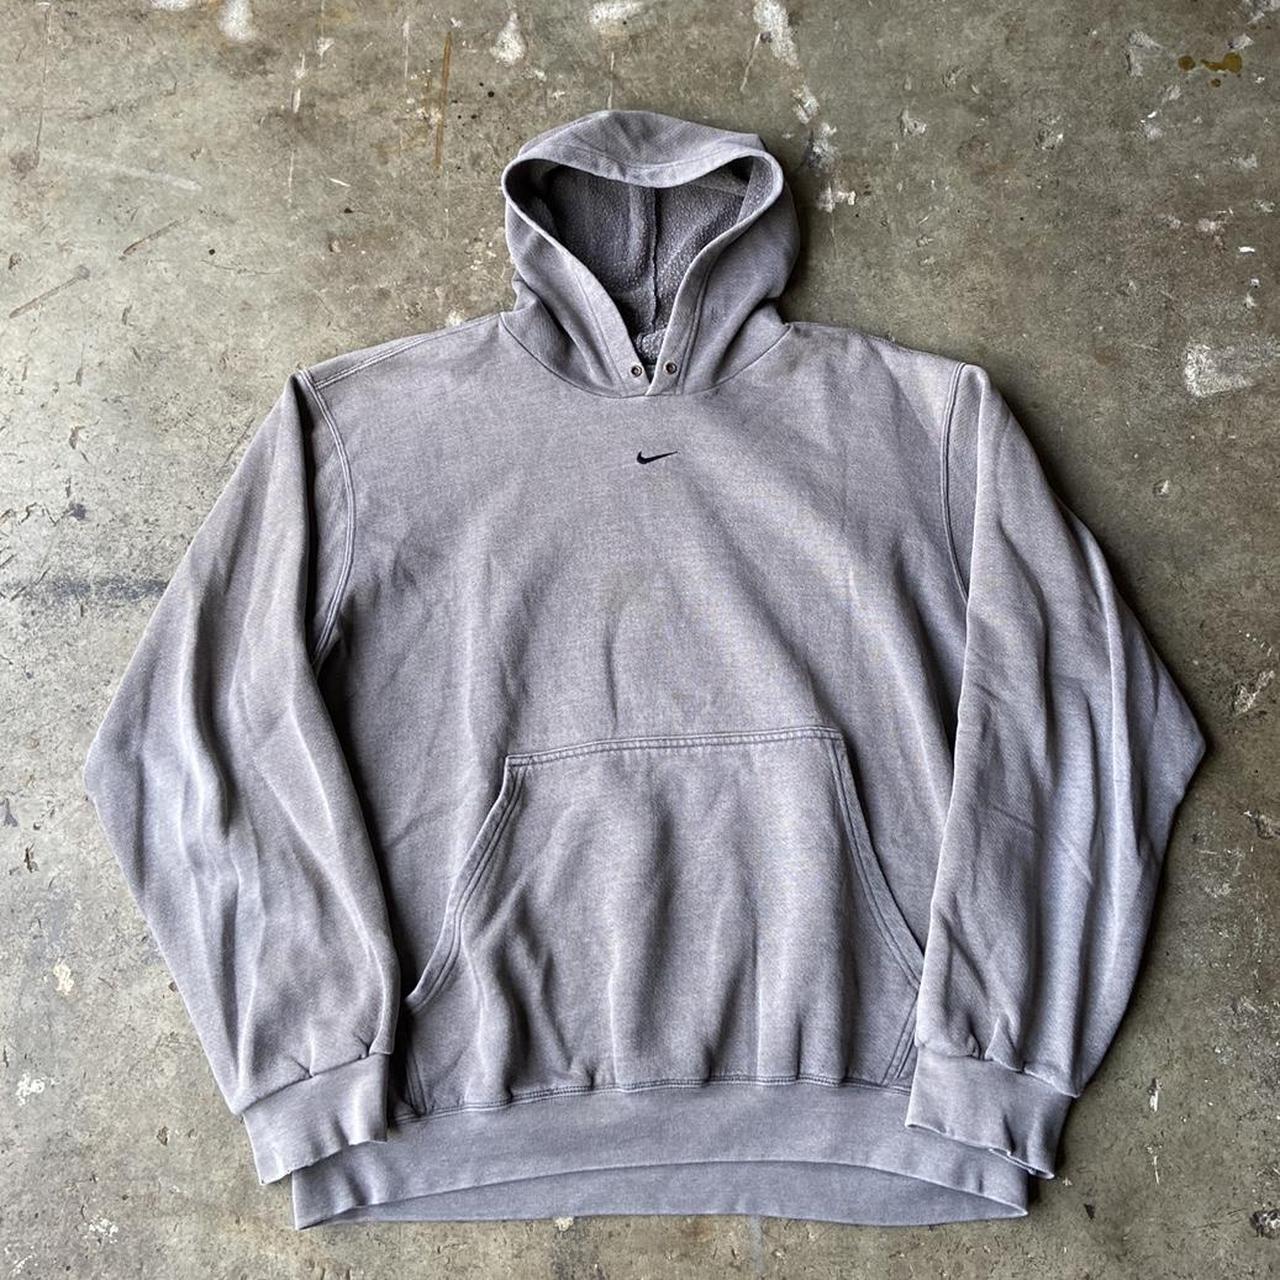 Vintage y2k grey Nike center swoosh hoodie! Size... - Depop